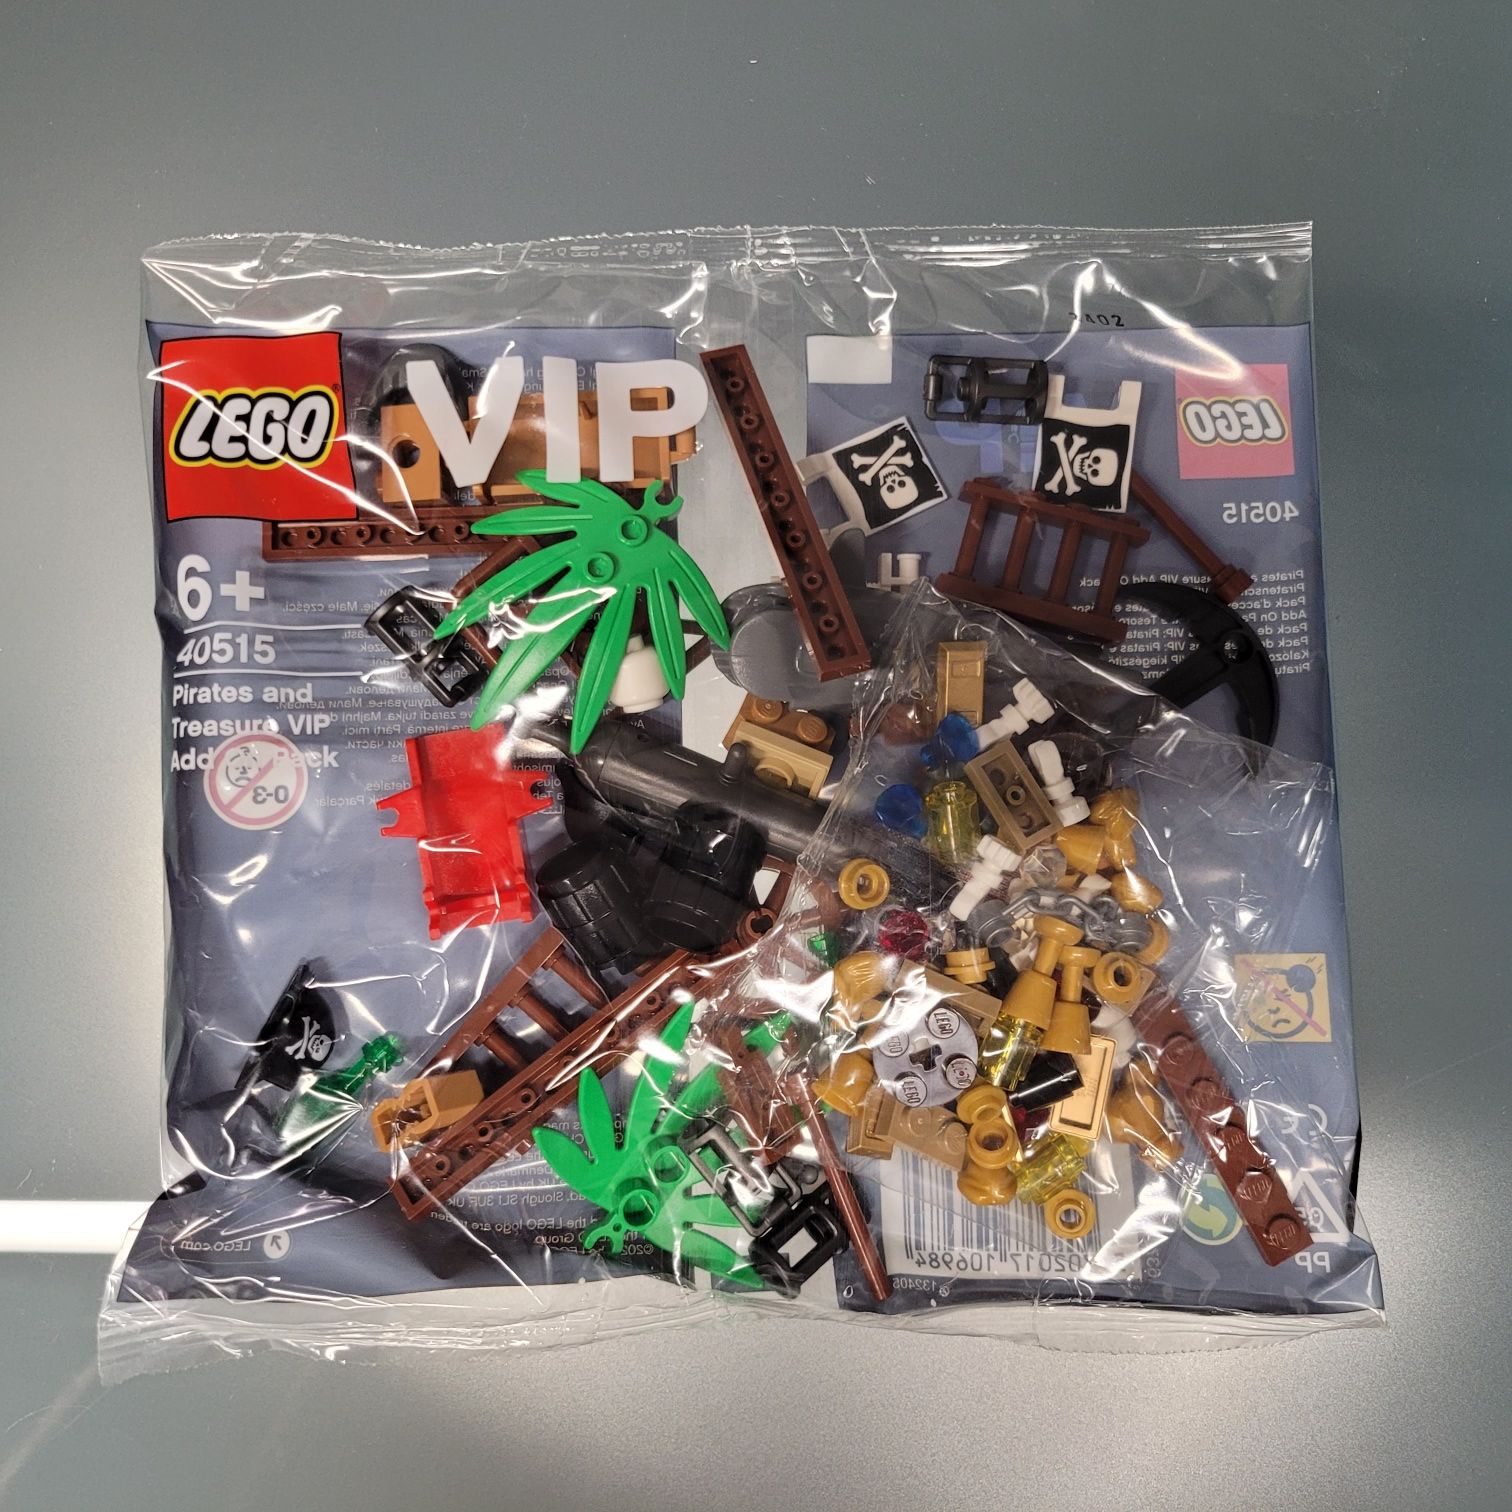 Lego VIP - nowe klocki MISB - 4 zestawy